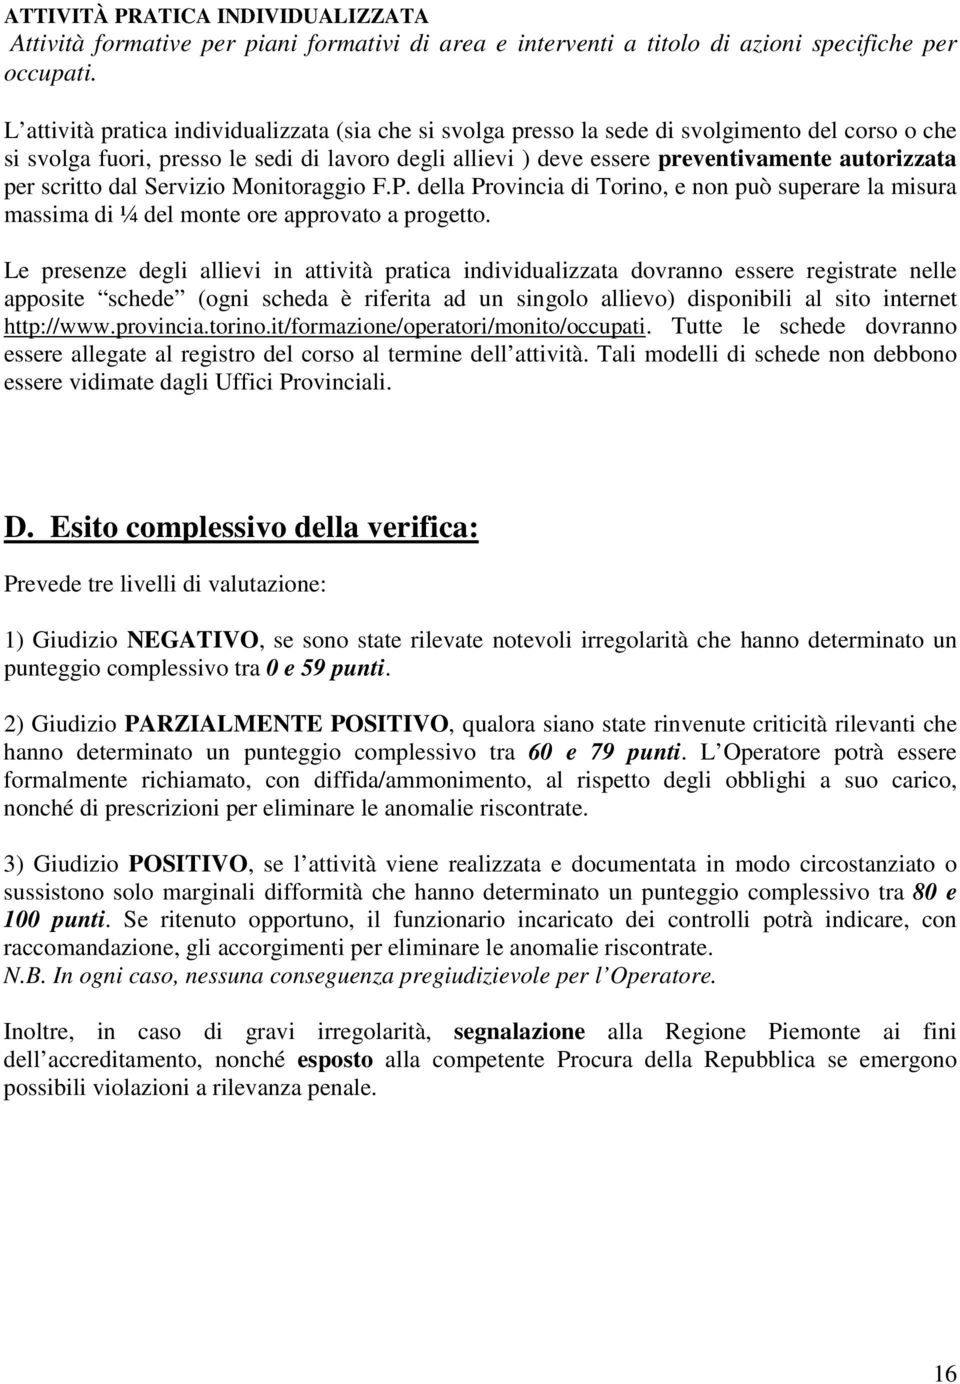 per scritto dal Servizio Monitoraggio F.P. della Provincia di Torino, e non può superare la misura massima di ¼ del monte ore approvato a progetto.